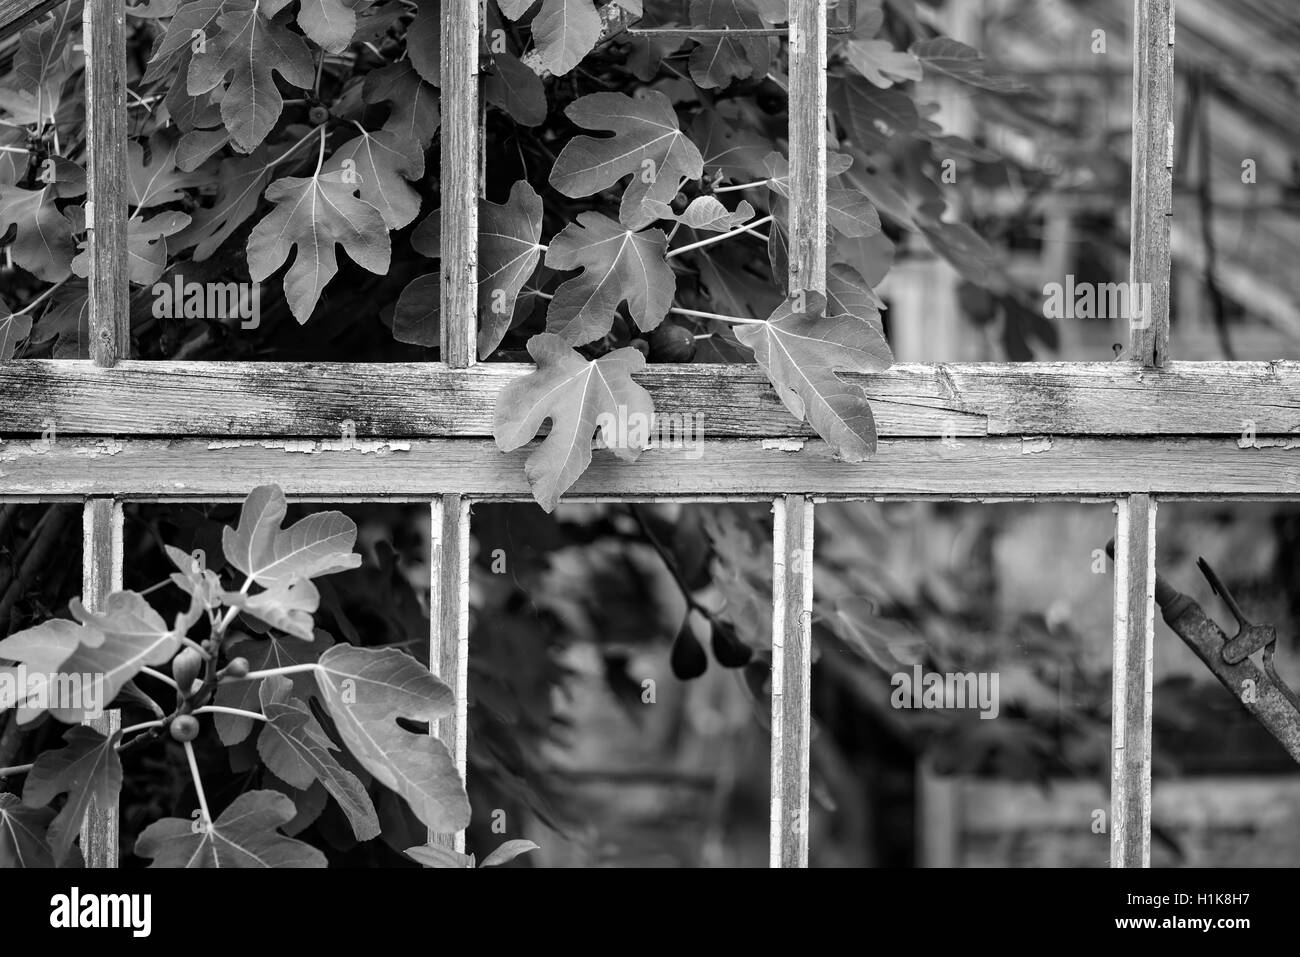 Hermosa y antigua época victoriana gases de izquierda a la ruina en el antiguo jardín inglés en blanco y negro Foto de stock